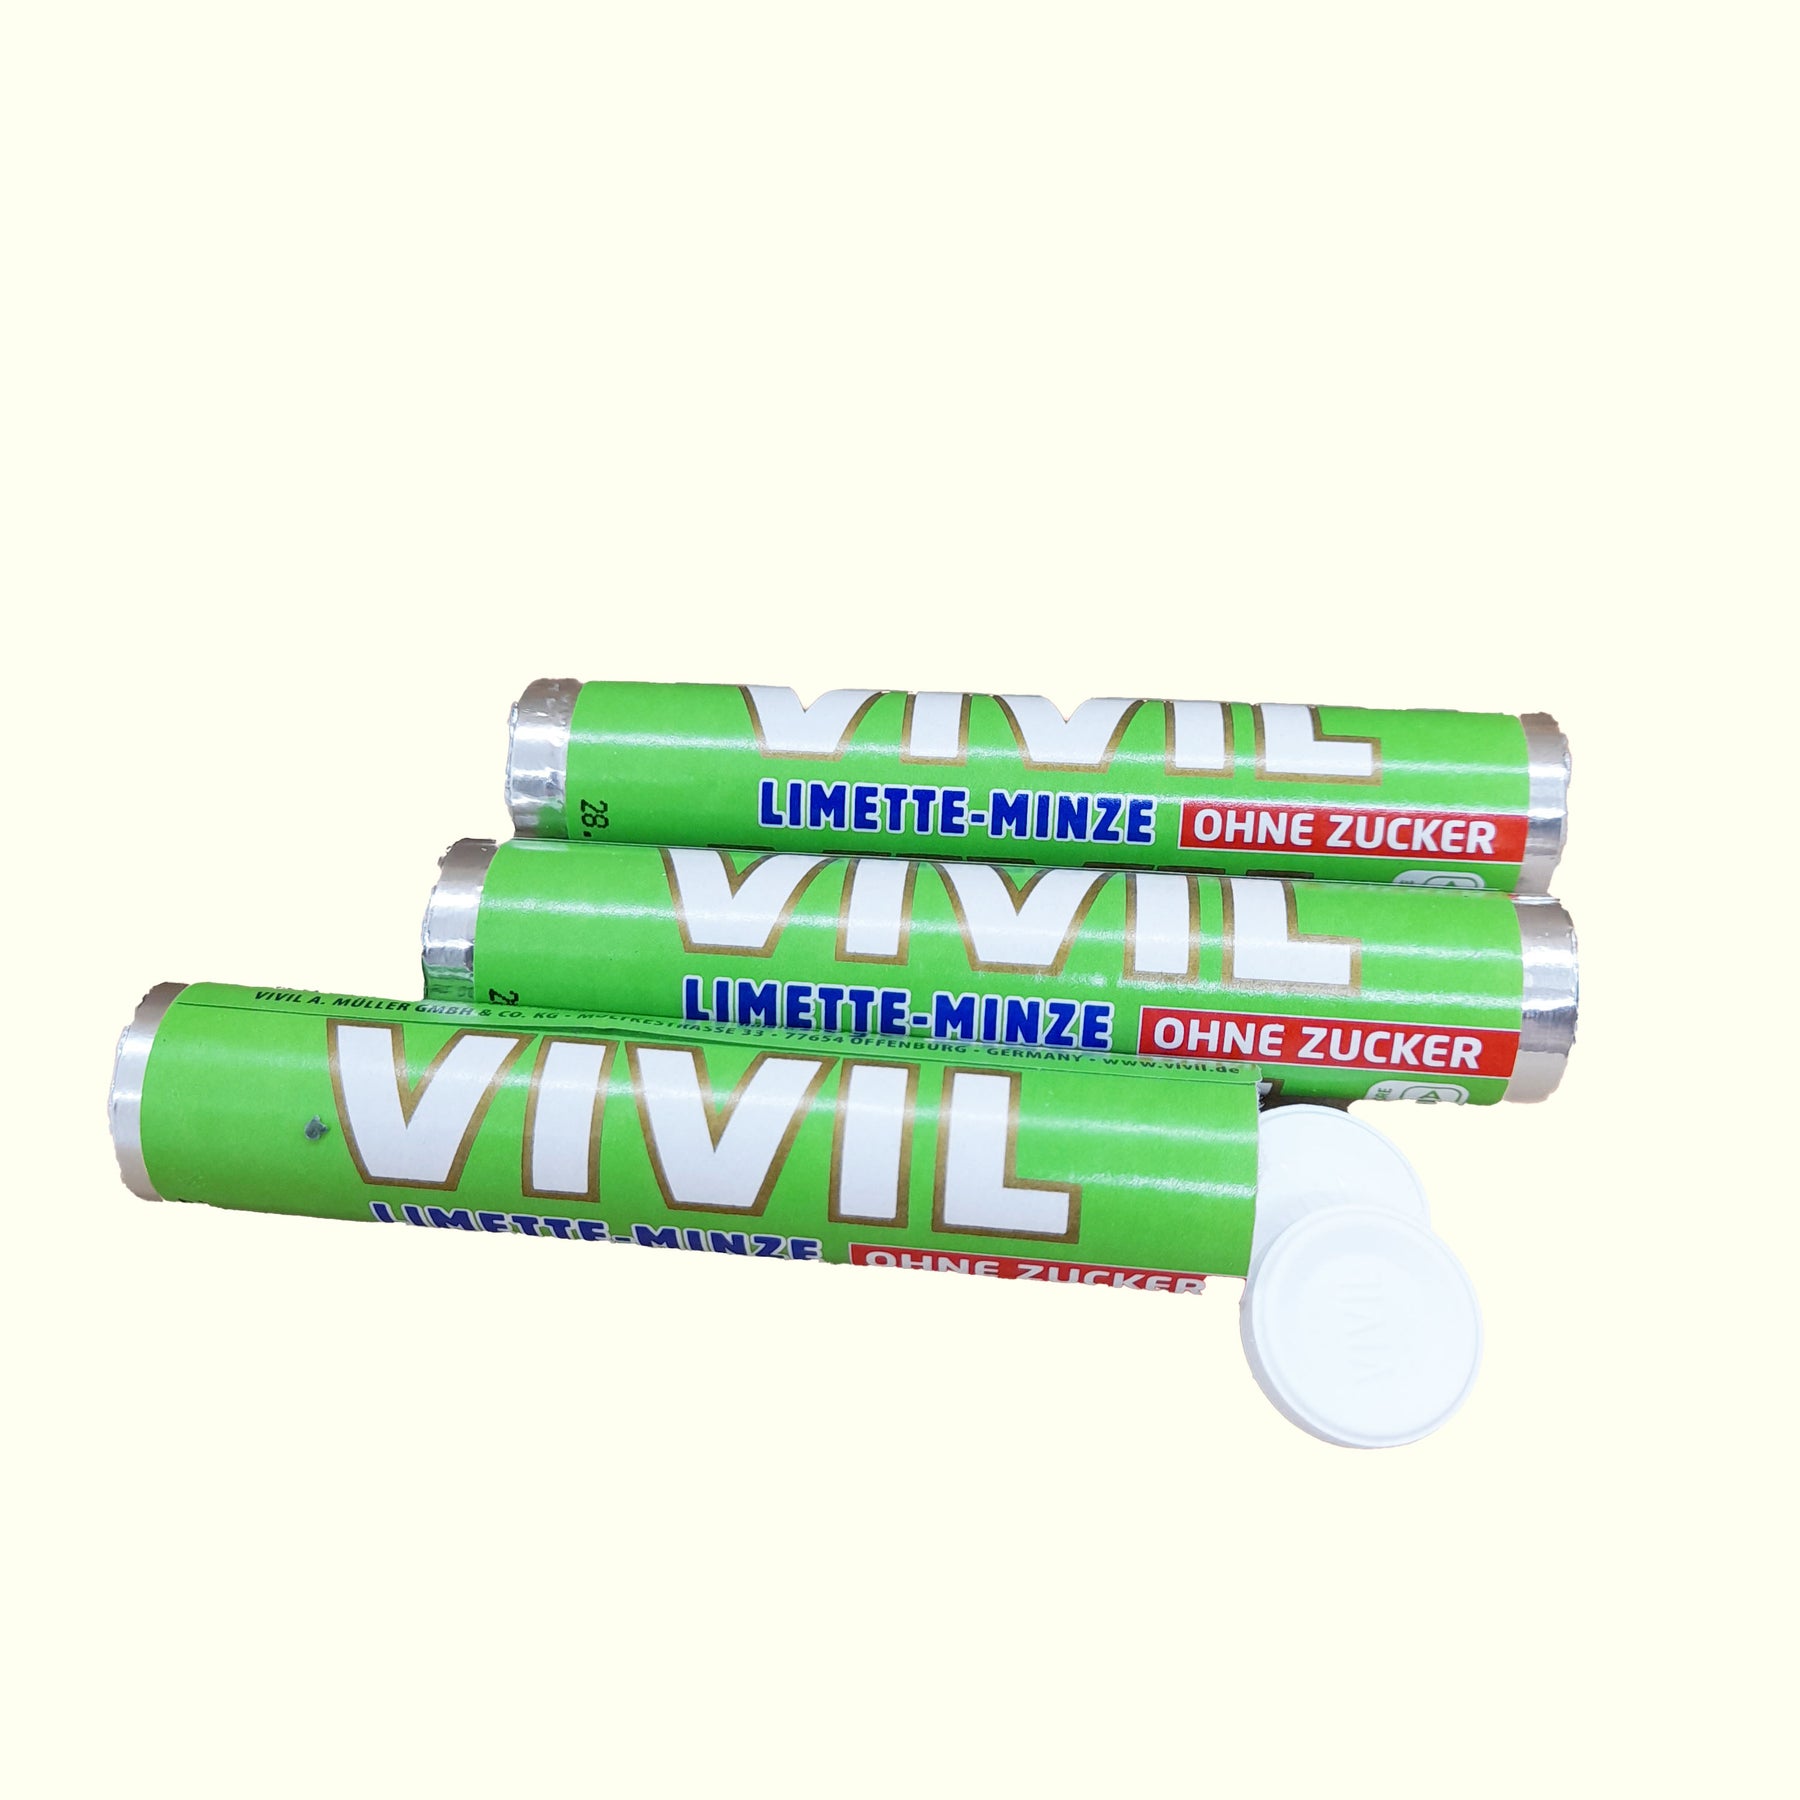 Vivil Limette-Minze ohne Zucker - 3 x 28g